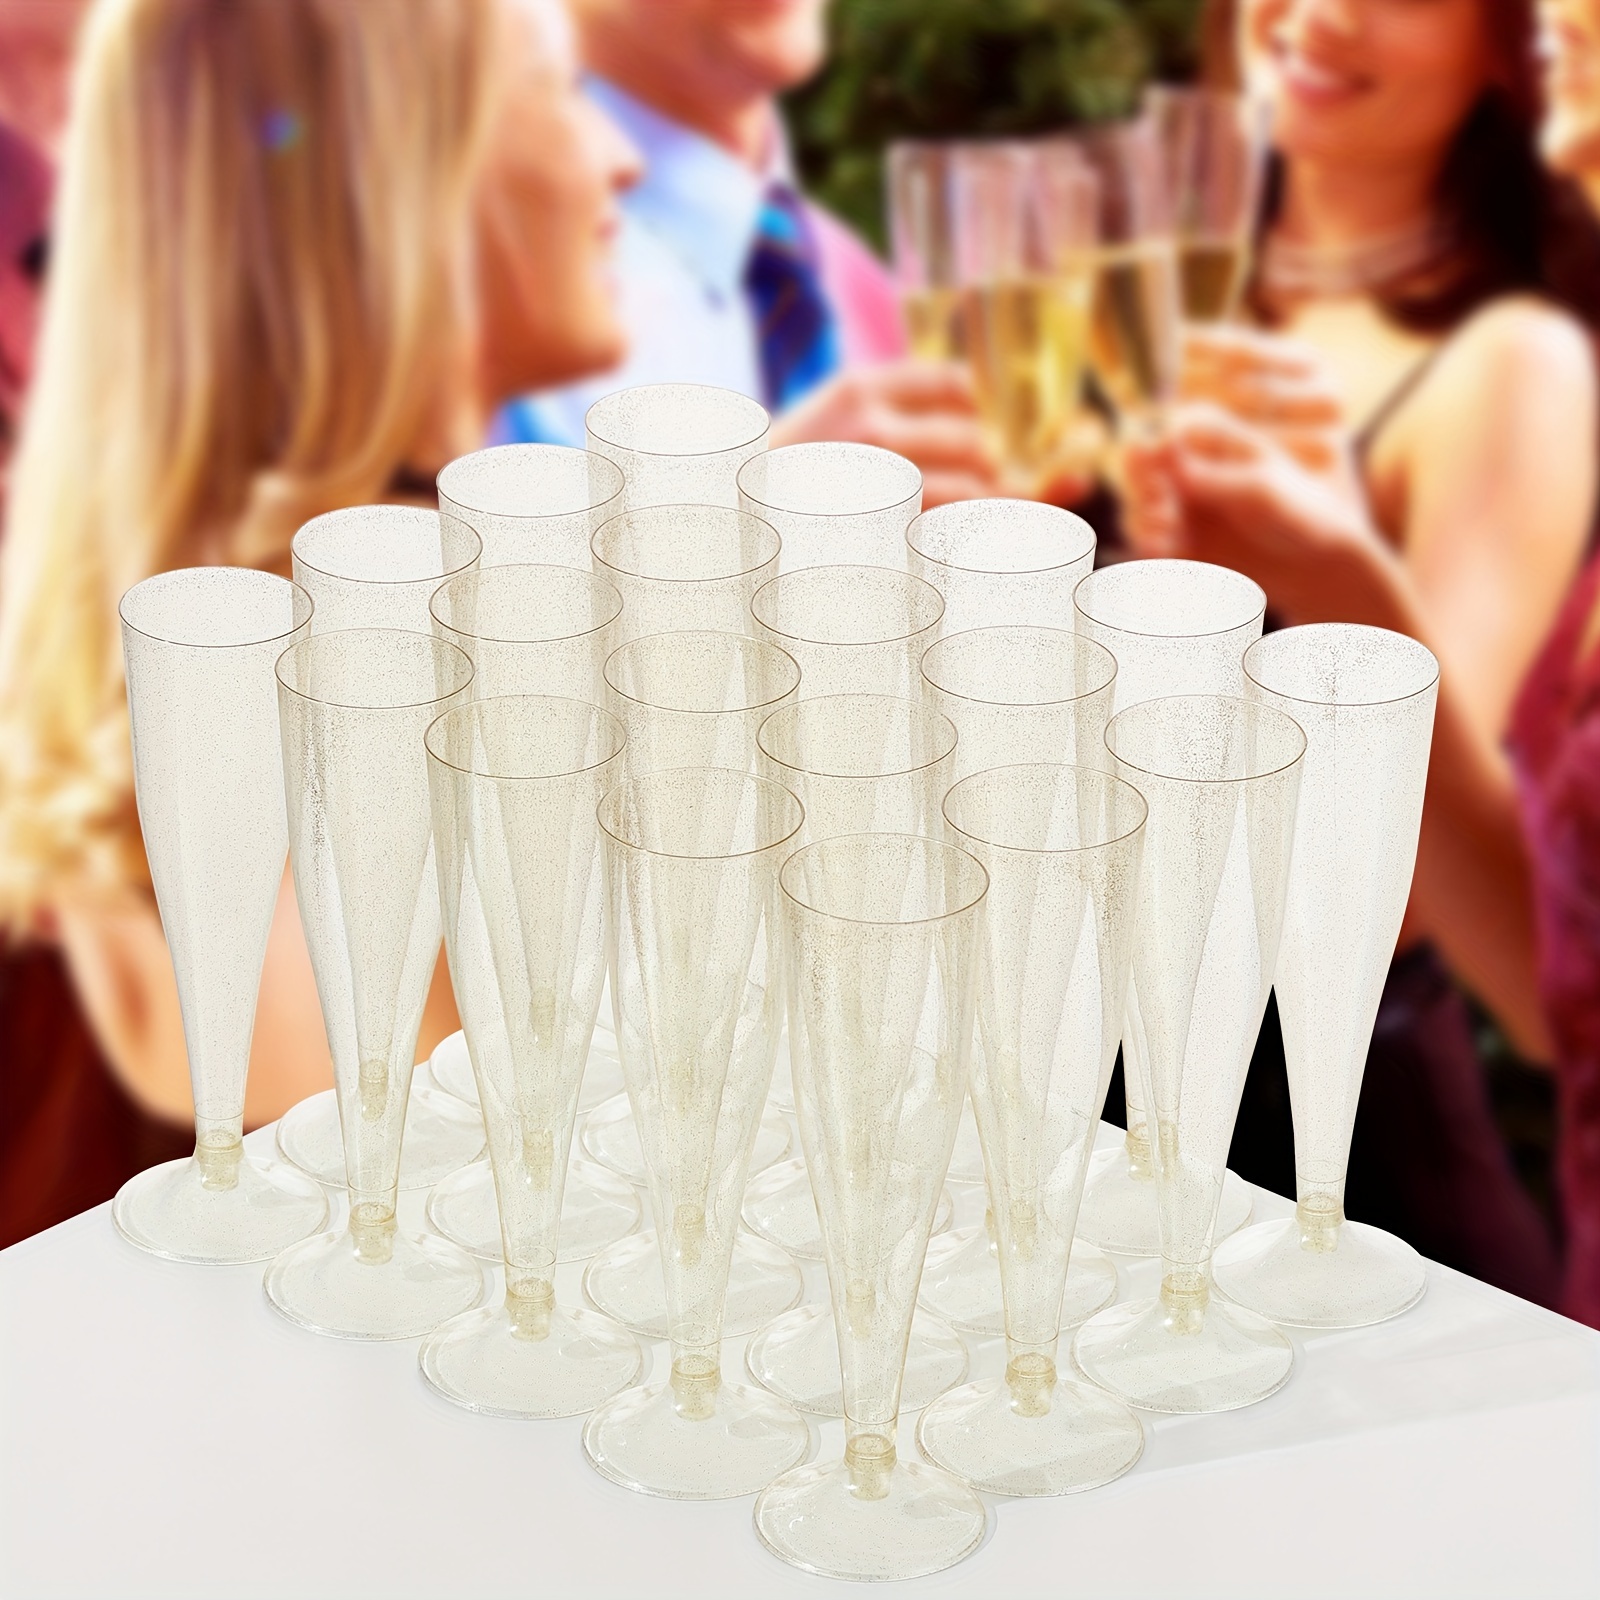 20pcs/10PCS/30Pcs Drinking Goblets Glass Mimosa Glasses Plastic